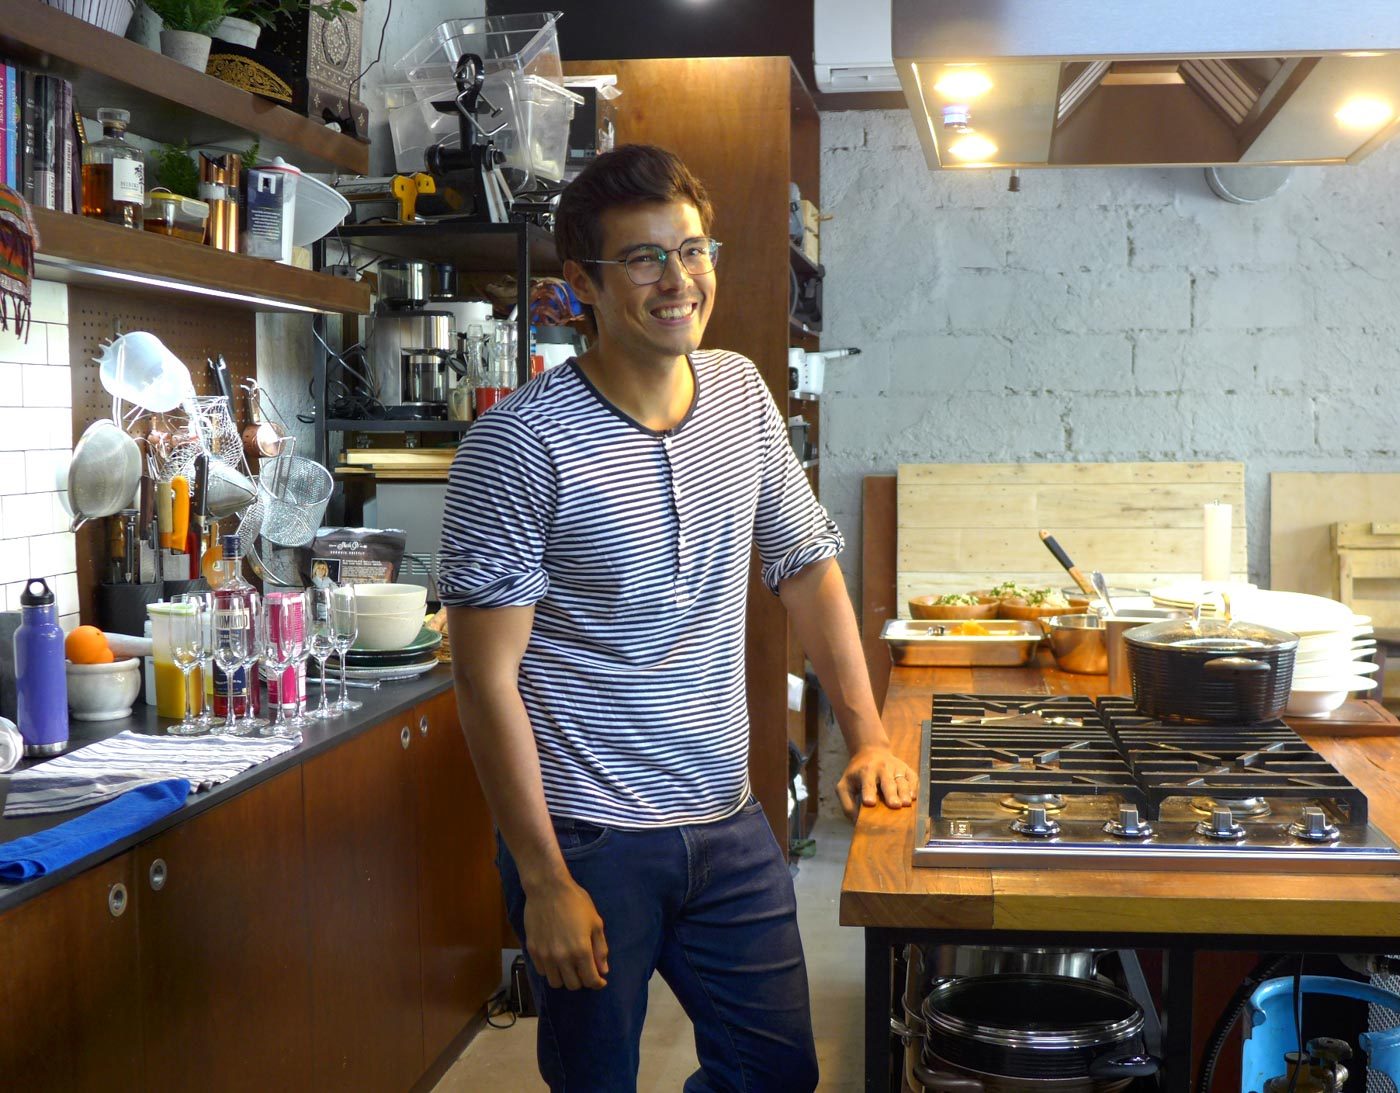 Erwan Heussaff: Slow cooking in the big city